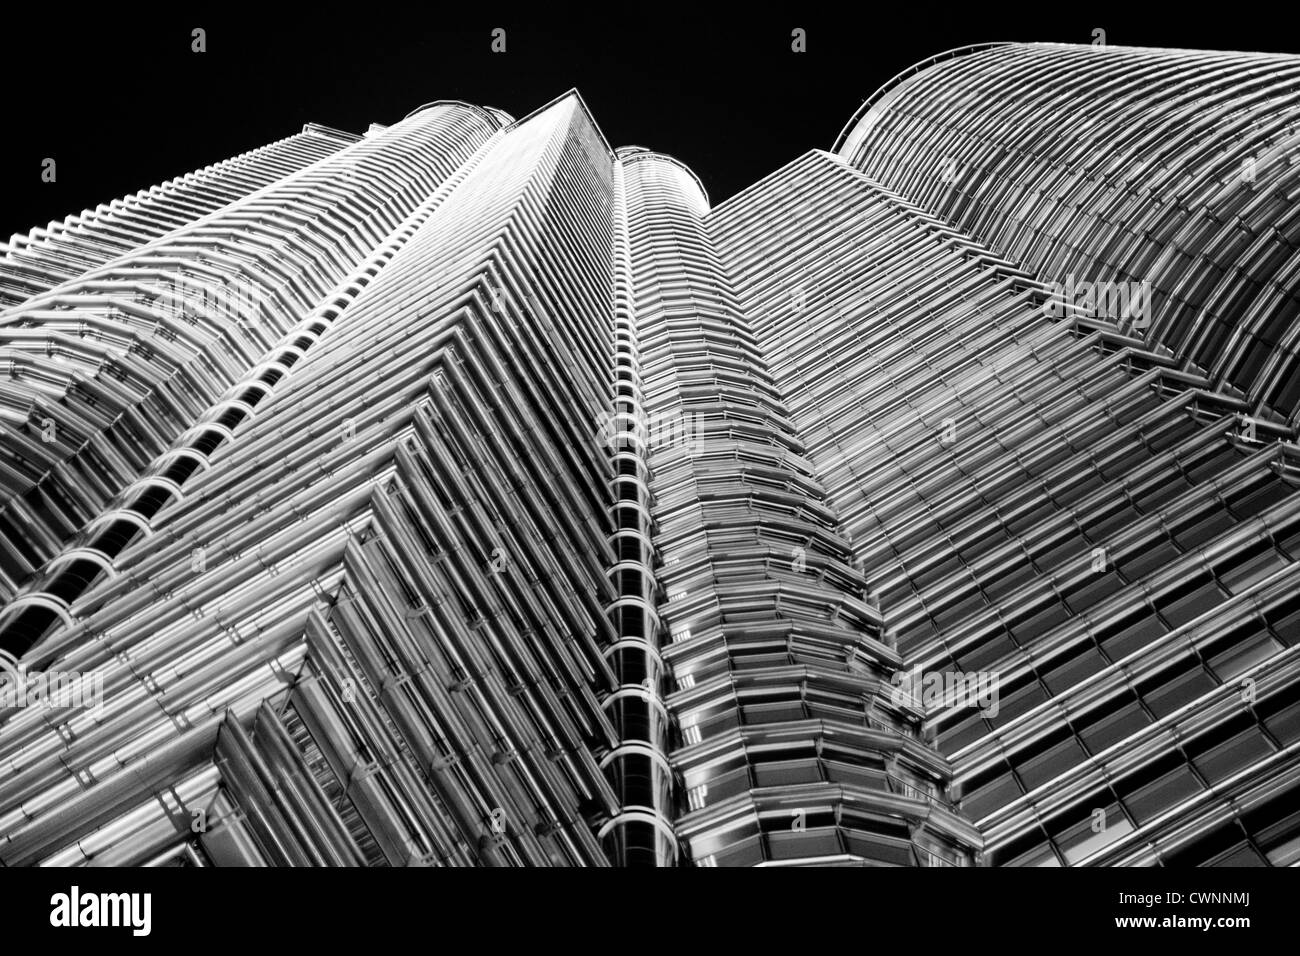 Blick auf die unglaubliche Wolkenkratzer von Petronas Towers in Kuala Lumpur. schönen architektonischen Gestaltung und einst das höchste Gebäude der Welt Stockfoto